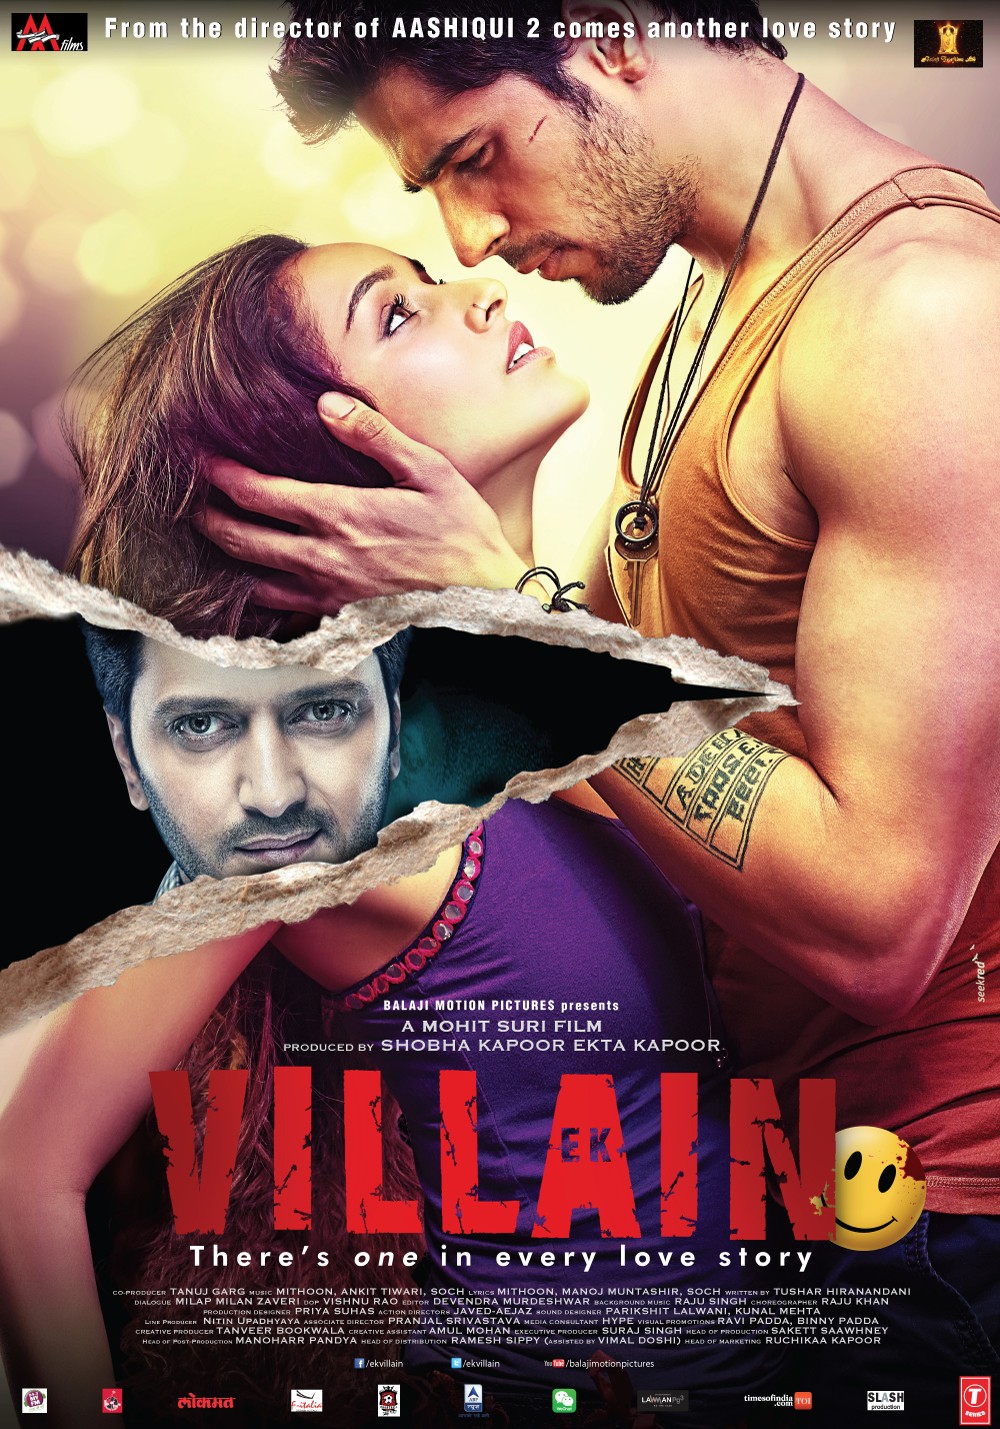 Ek Villain (#3 of 4): Extra Large Movie Poster Image - IMP Awards